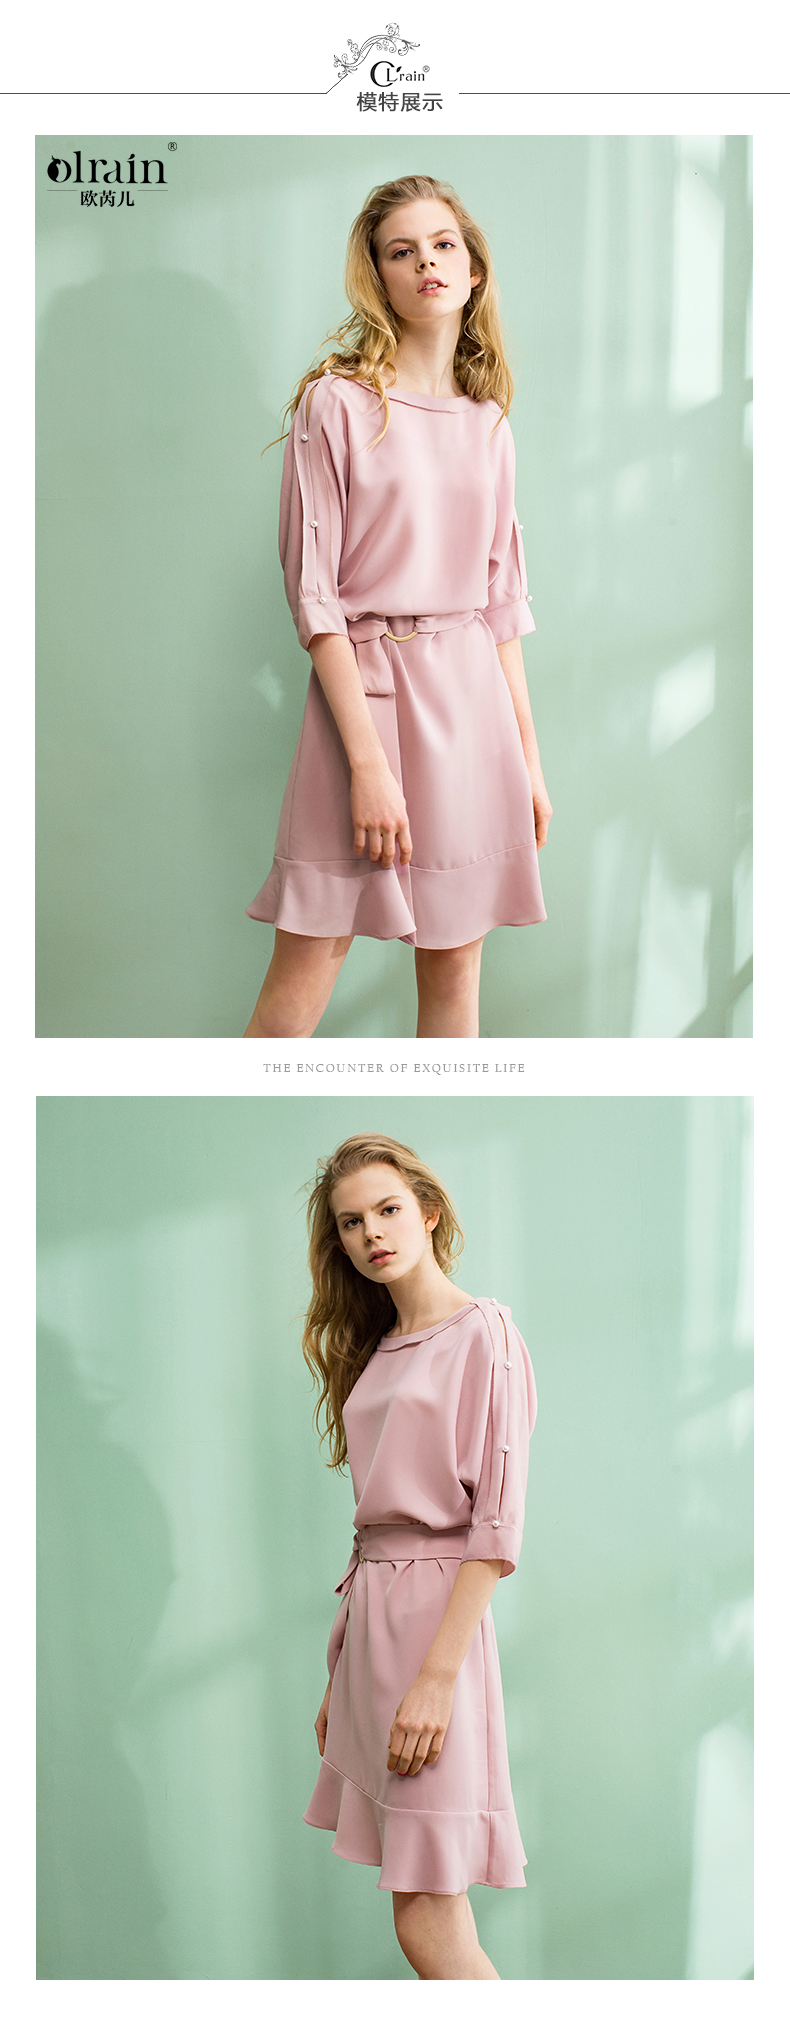 新款香奈兒粉色外套 歐芮兒2020夏裝新款時尚釘珠收腰一字領荷葉邊裙粉色連衣裙中長款 香奈兒粉